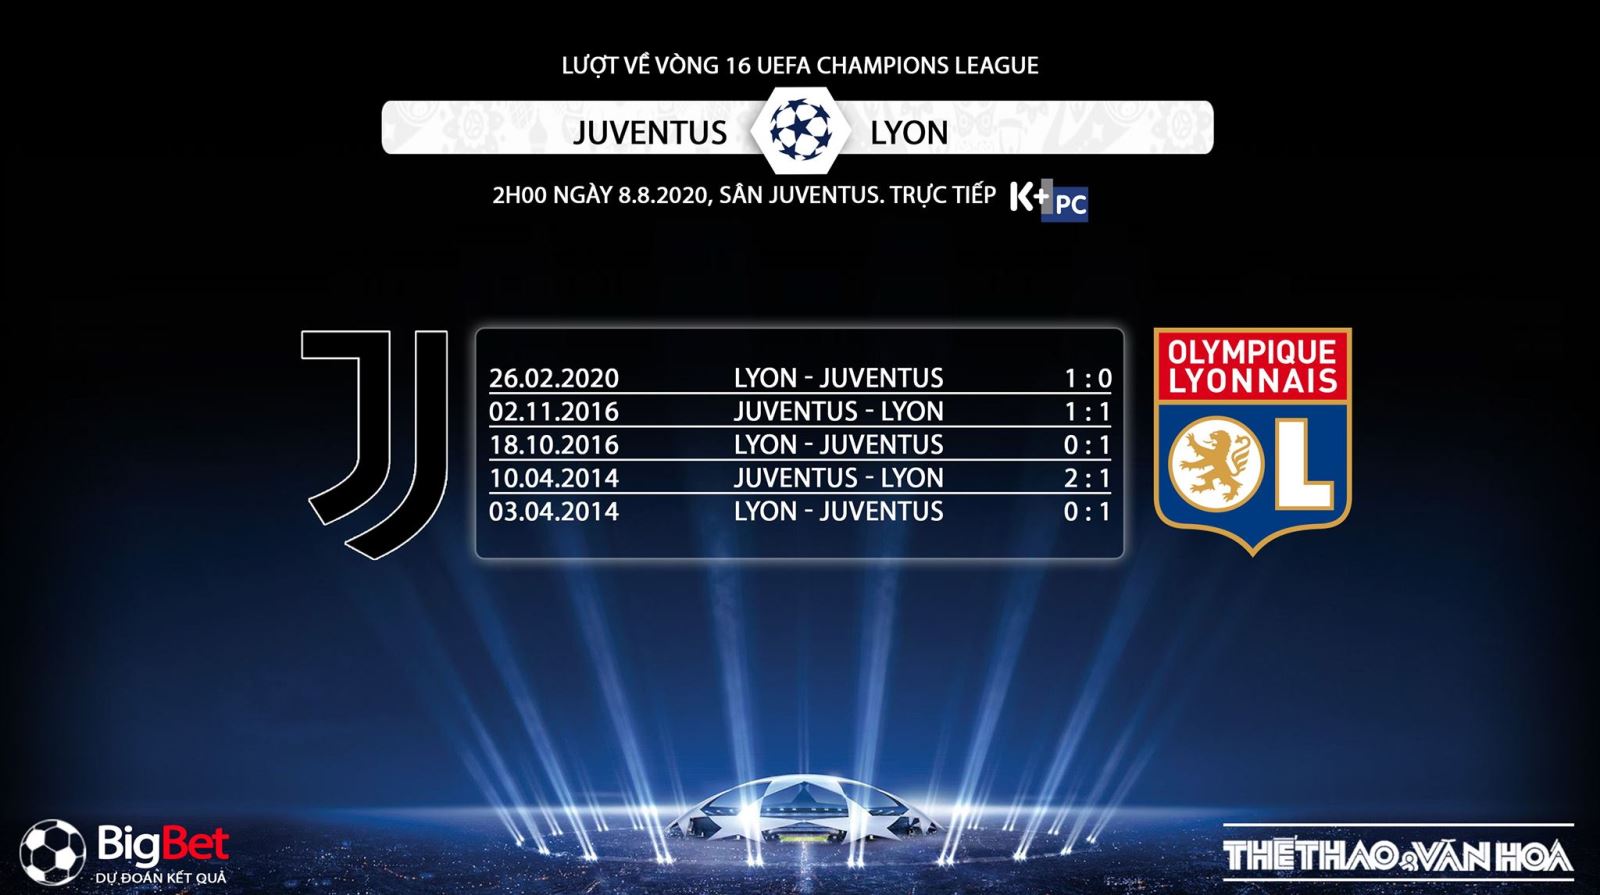 Juventus vs Lyon, Juve, Lyon, trực tiếp bóng đá, trực tiếp, trực tiếp Juventus vs Lyon, nhận định bóng đá bóng đá, nhận định bóng đá Juventus vs Lyon, kèo bóng đá